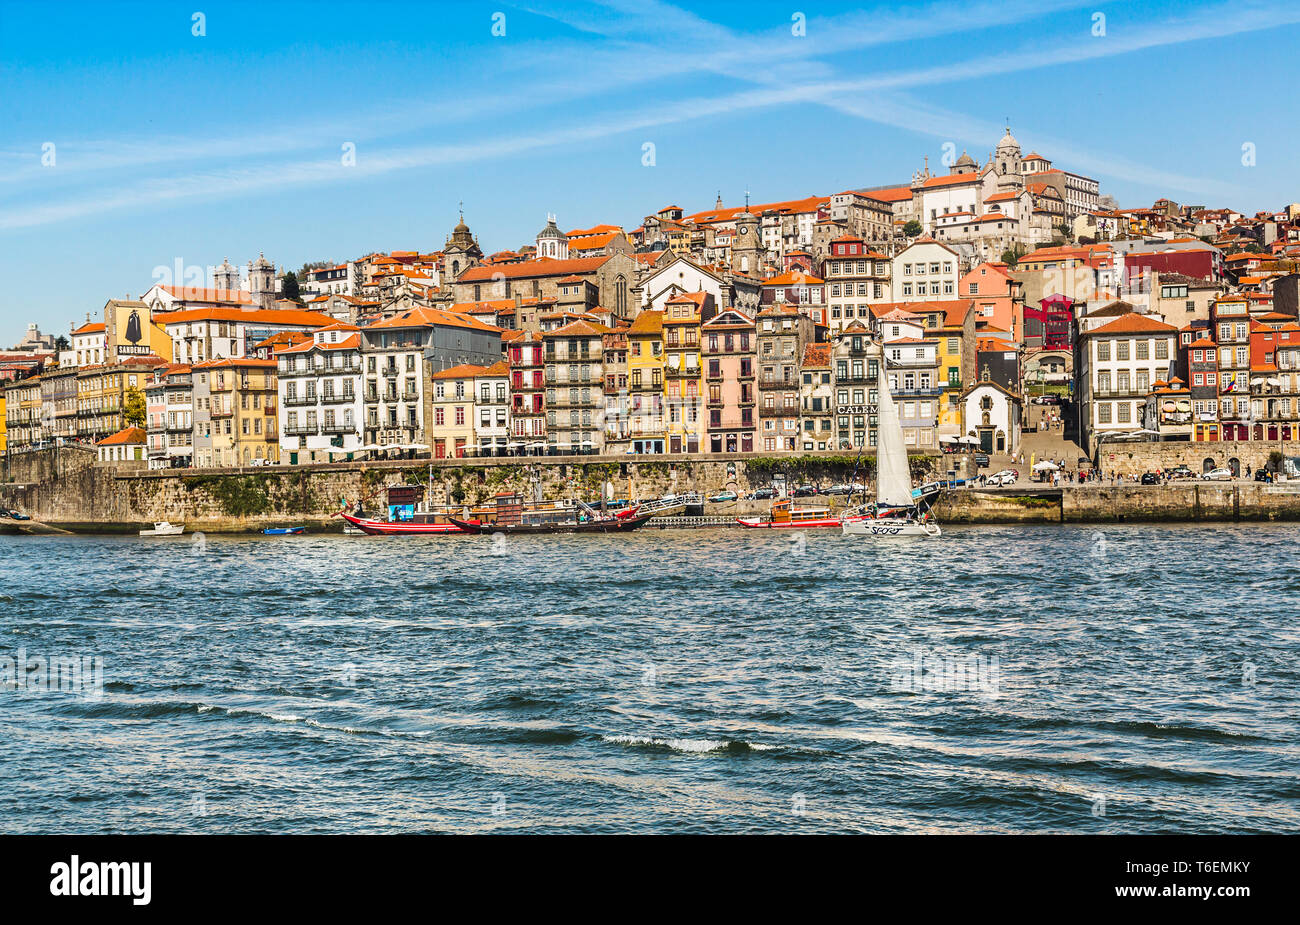 Porto old town embankment on the Douro River Stock Photo